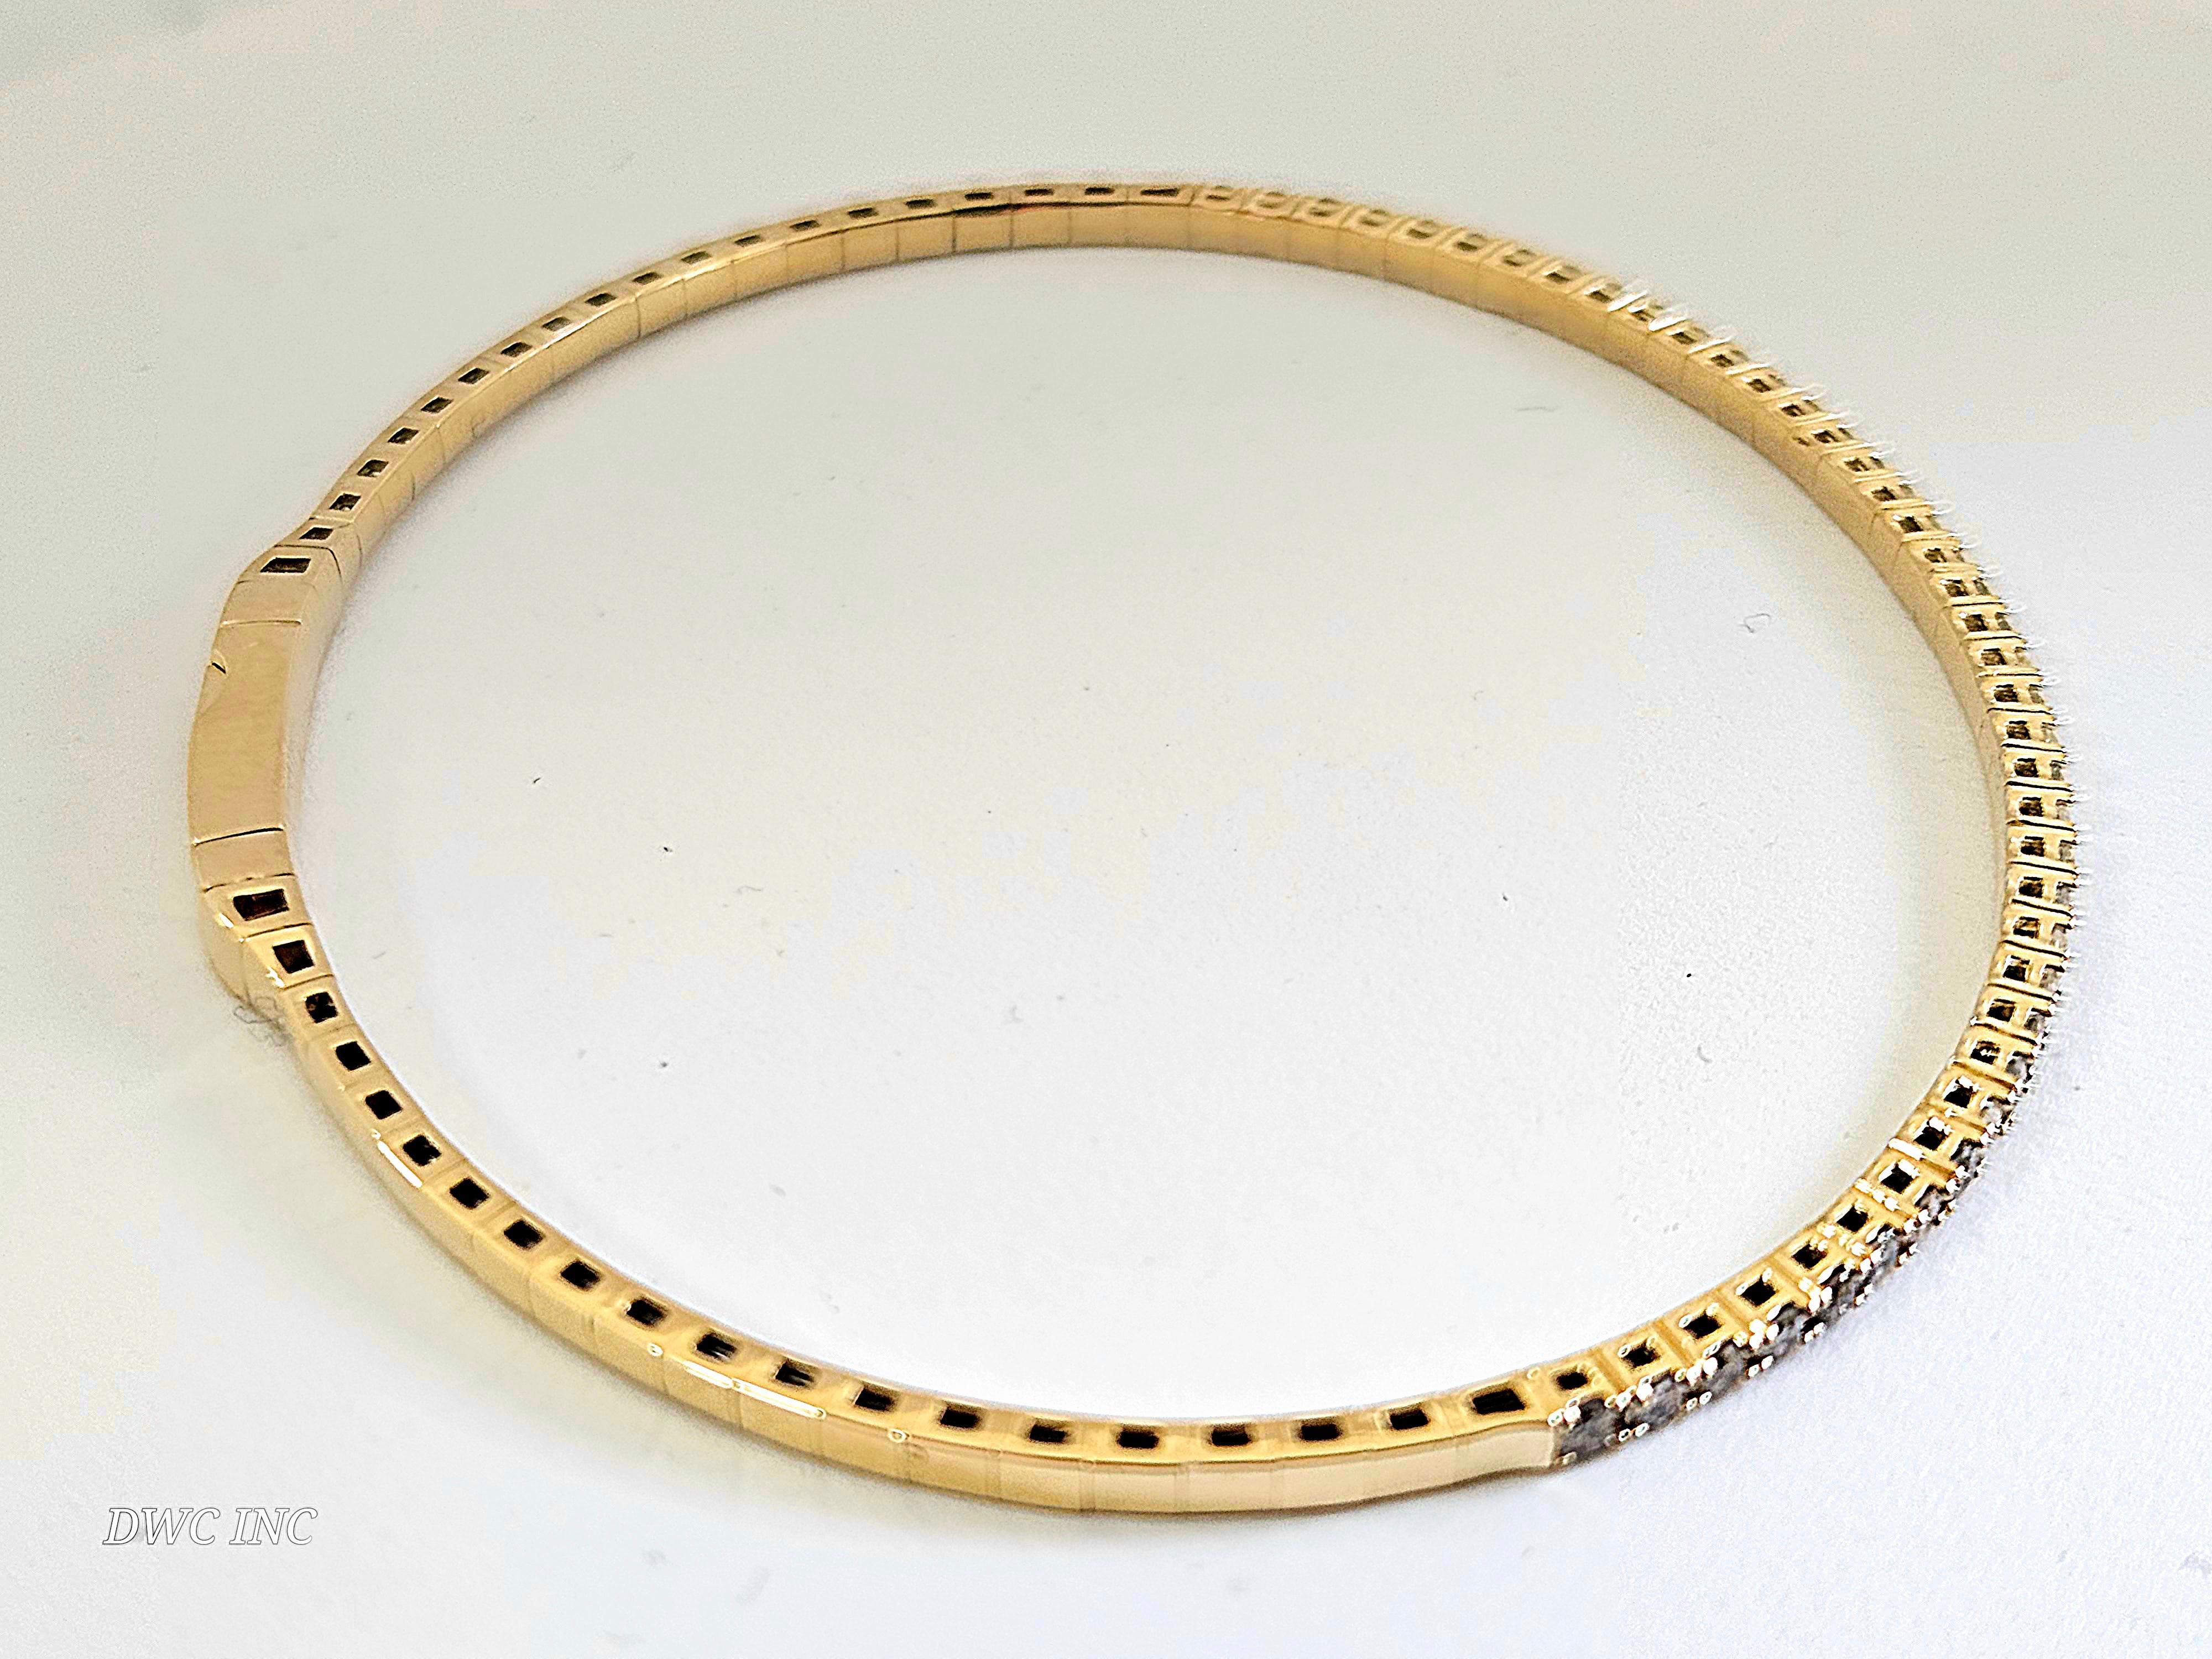 0.85 Carat Diamants naturels Mini Bangle bracelet coupe ronde-brillante  Or jaune 14k. 
7 pouces. 41pcs Moyenne H-,I  1,9 mm de large. Très brillant 5.77 grammes.

*Expédition gratuite à l'intérieur des États-Unis